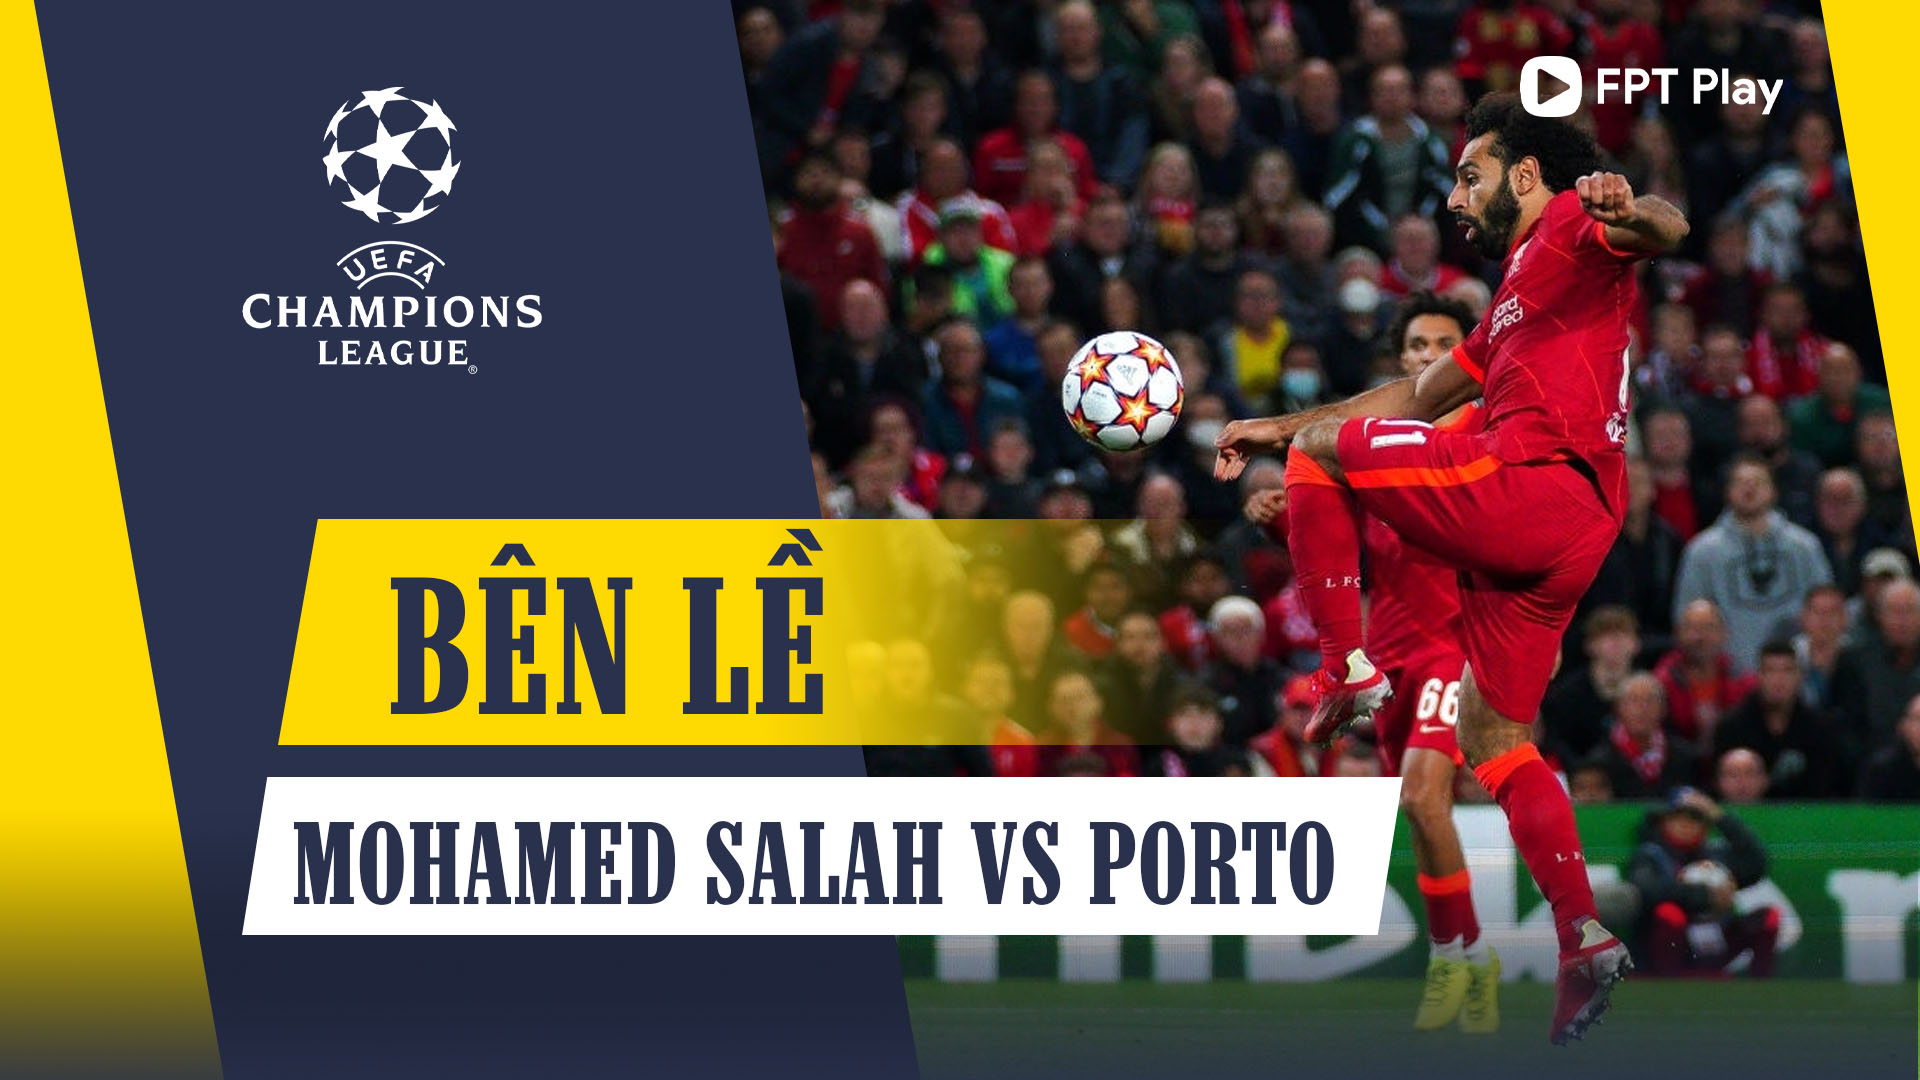 Màn trình diễn của Mohamed Salah trước Porto - Bên lề UEFA Champions League